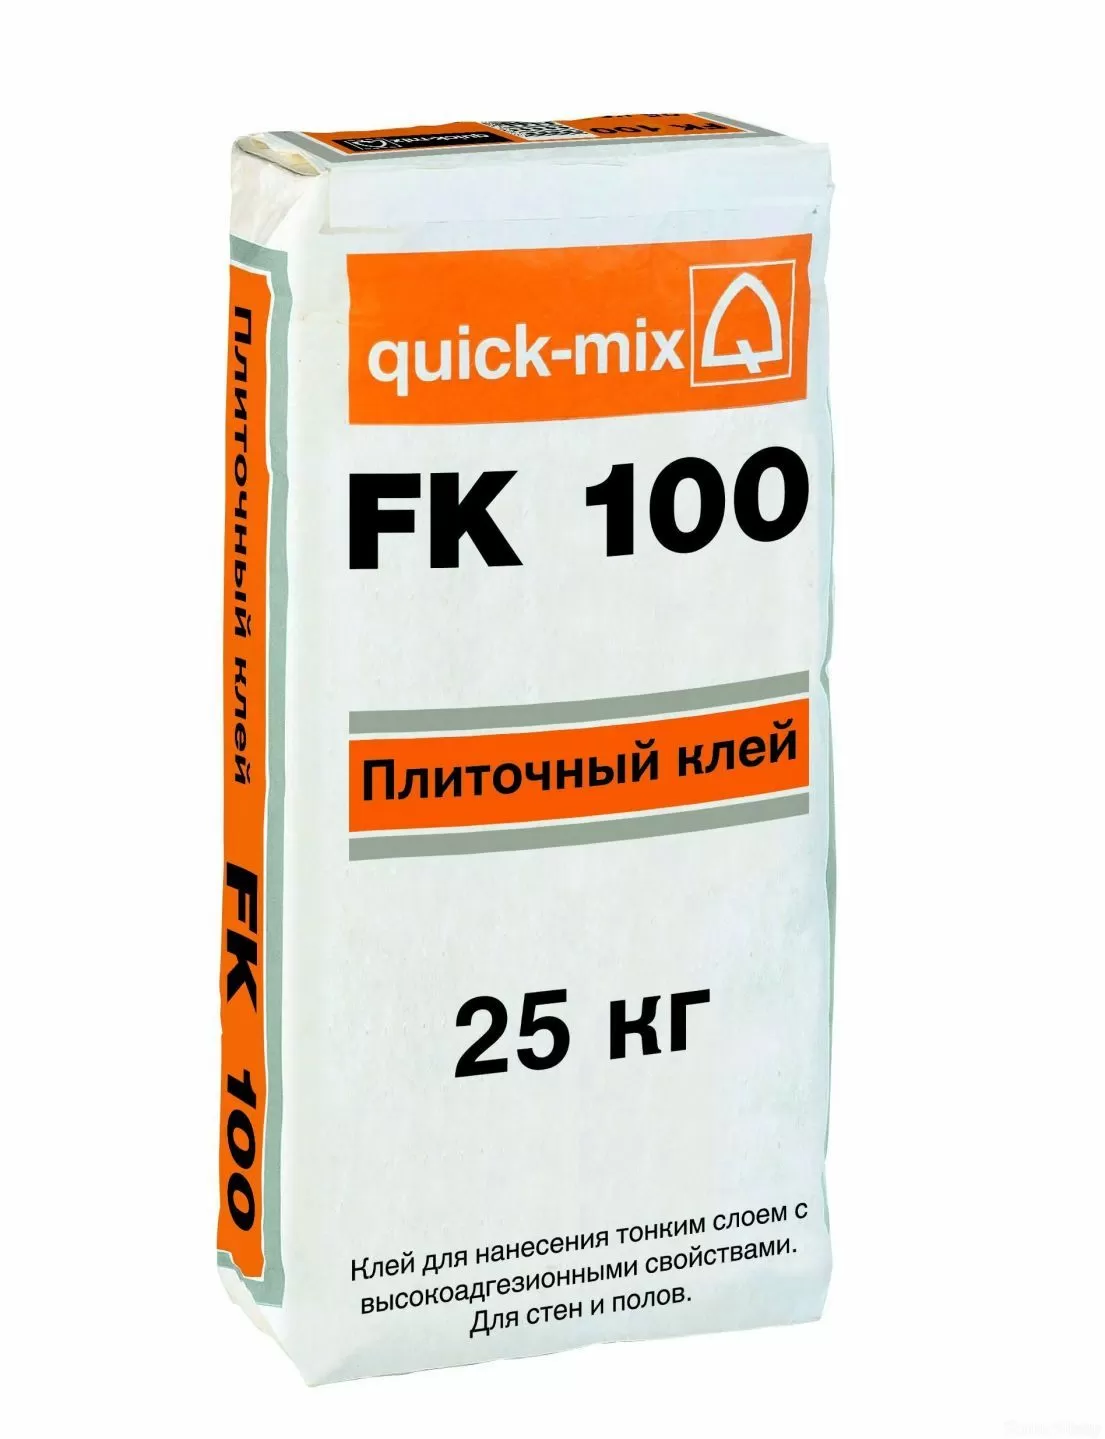 Плиточный клей quick-mix FK 100 фото